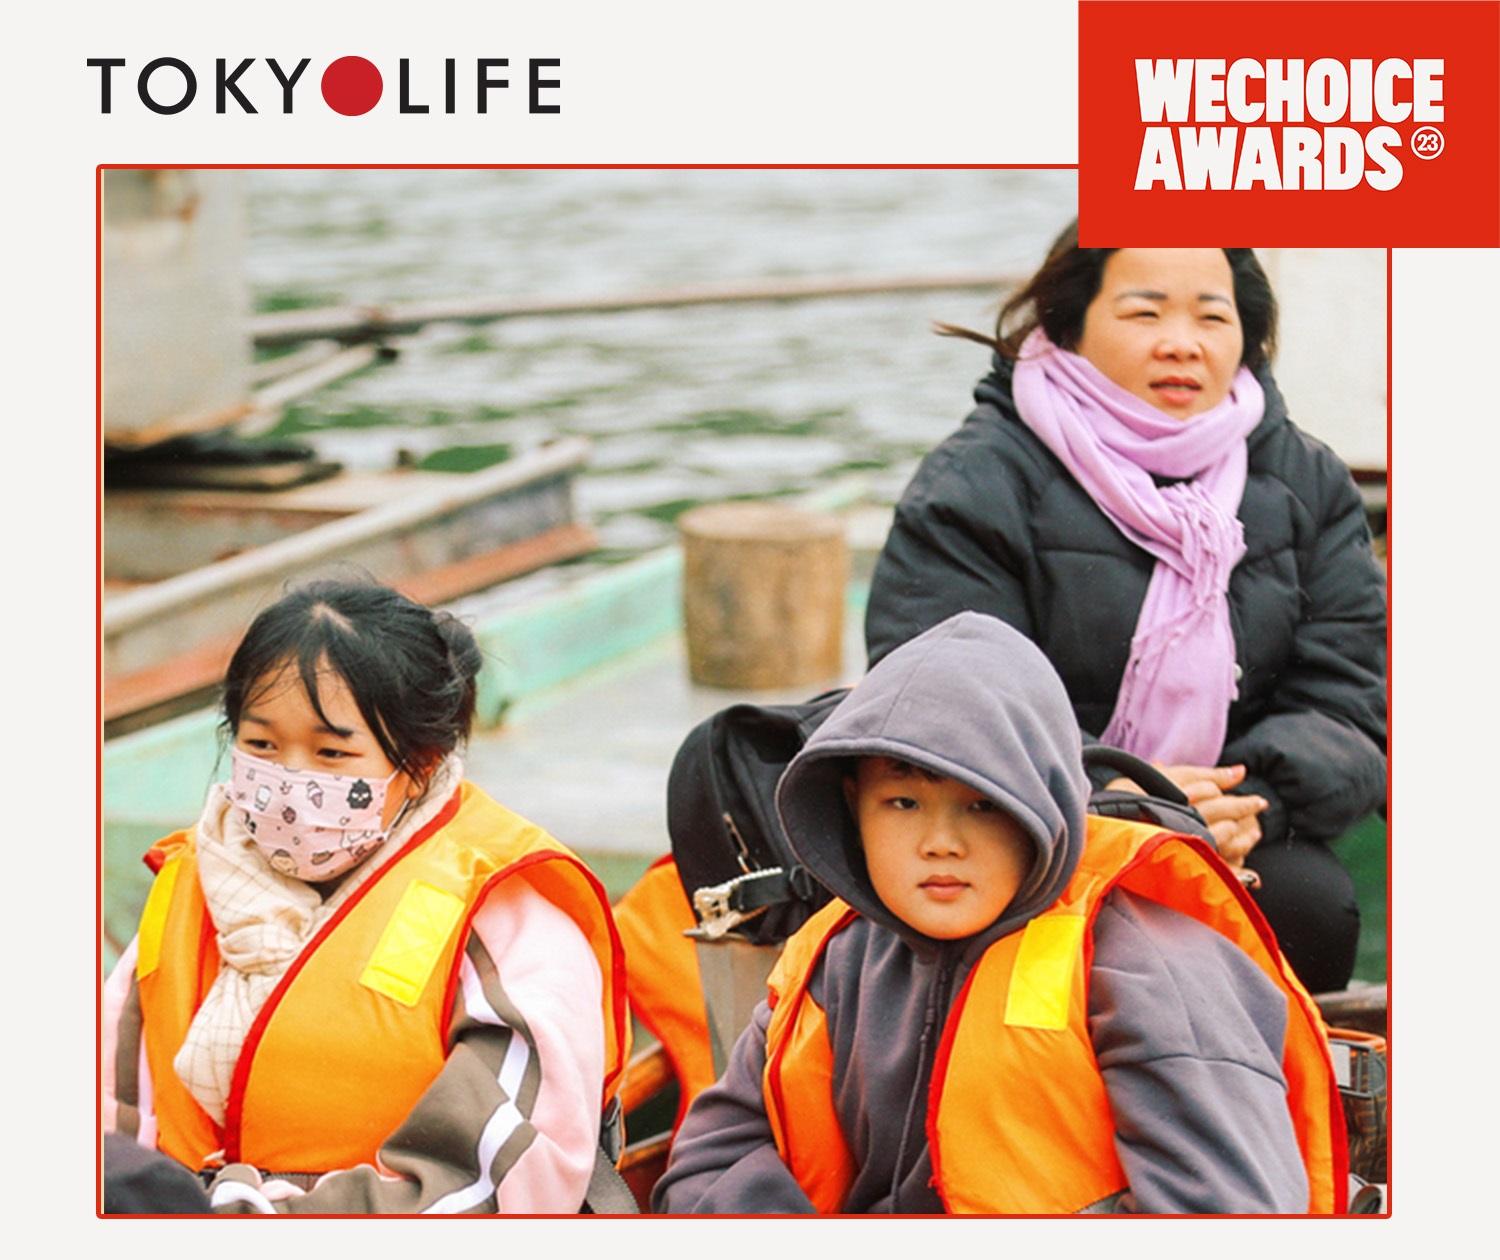 TokyoLife đồng hành cùng WeChoice Awards: Mọi hành động tử tế đều cần được tôn vinh và lan tỏa - Ảnh 3.